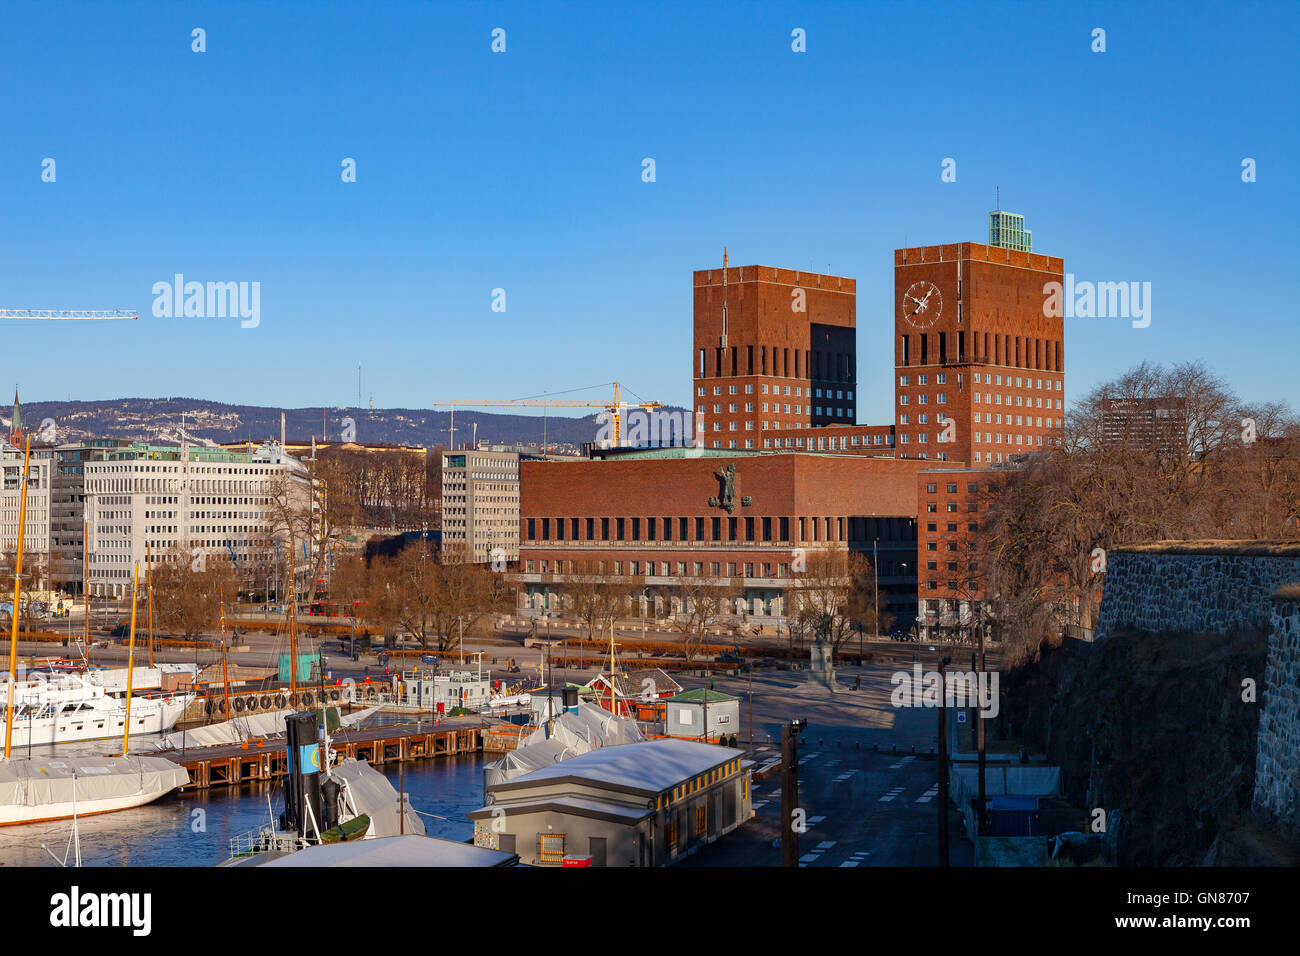 Oslo City Hall, Norway. Winter sunny day. Stock Photo